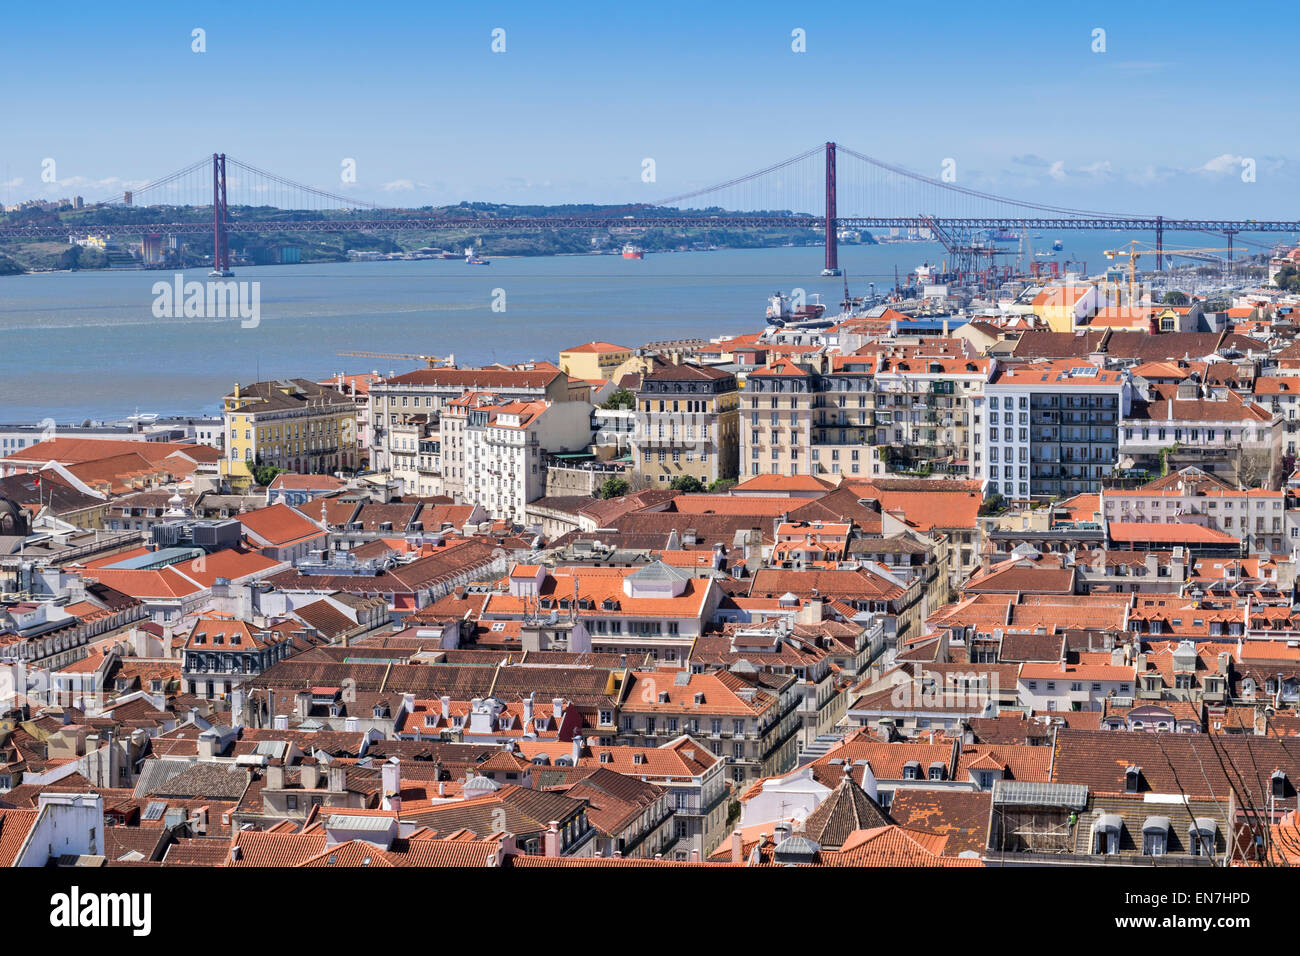 Lisbonne Portugal SUR LA VILLE DE LA RIVIÈRE TAGUS ET DU PONT DE 25 de Abril Banque D'Images